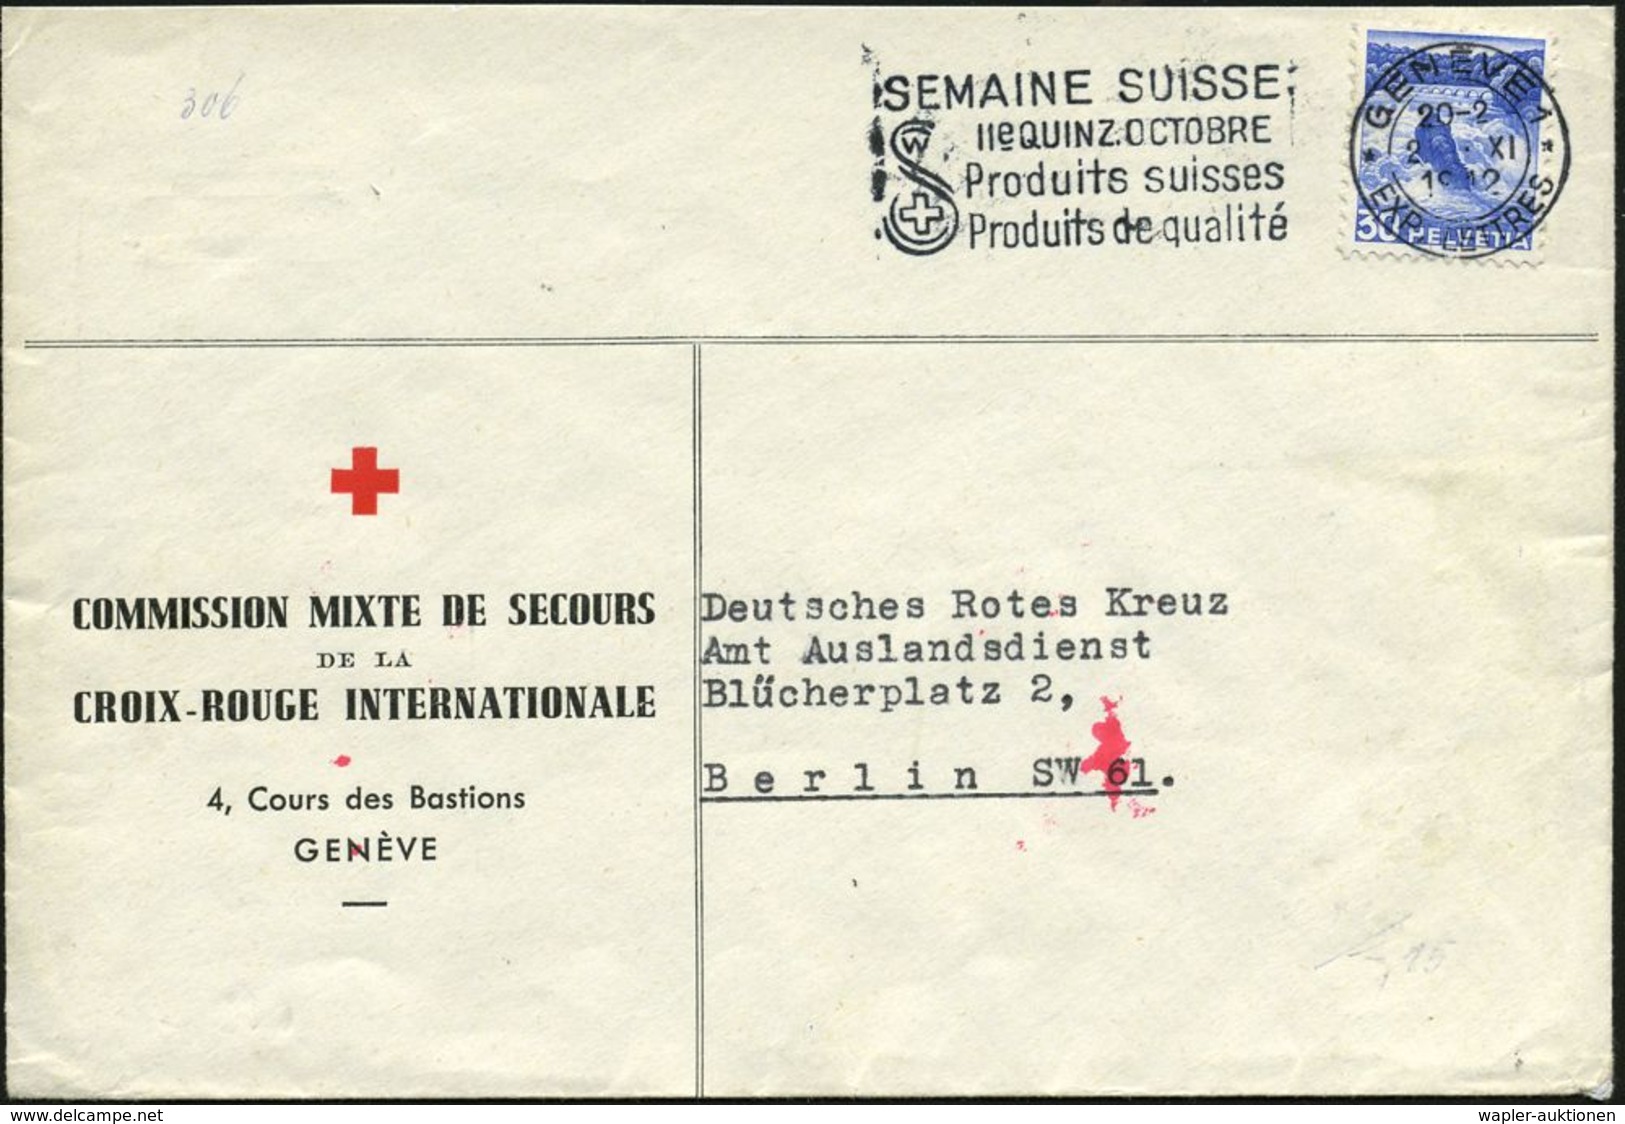 SCHWEIZ 1942 (2.11.) Dienst-Bf: COMMISSION MIXTE DE SECOURS/DE LA CRI , Rs.OKW-Zensur-Streifen U. Roter 1K: "e" (= Ffm)  - Croix-Rouge